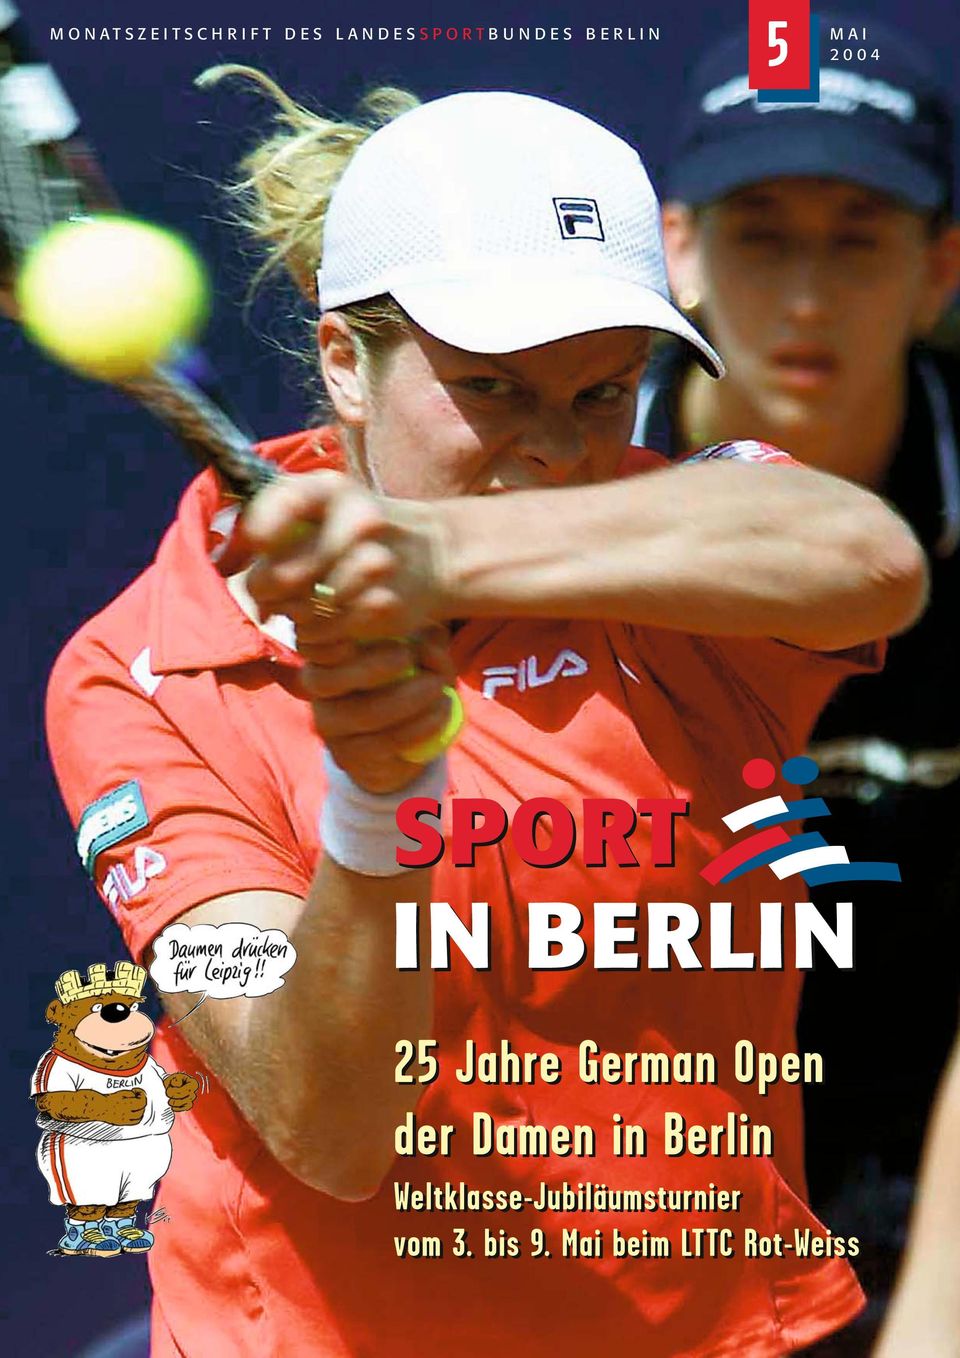 German Open der Damen in Berlin